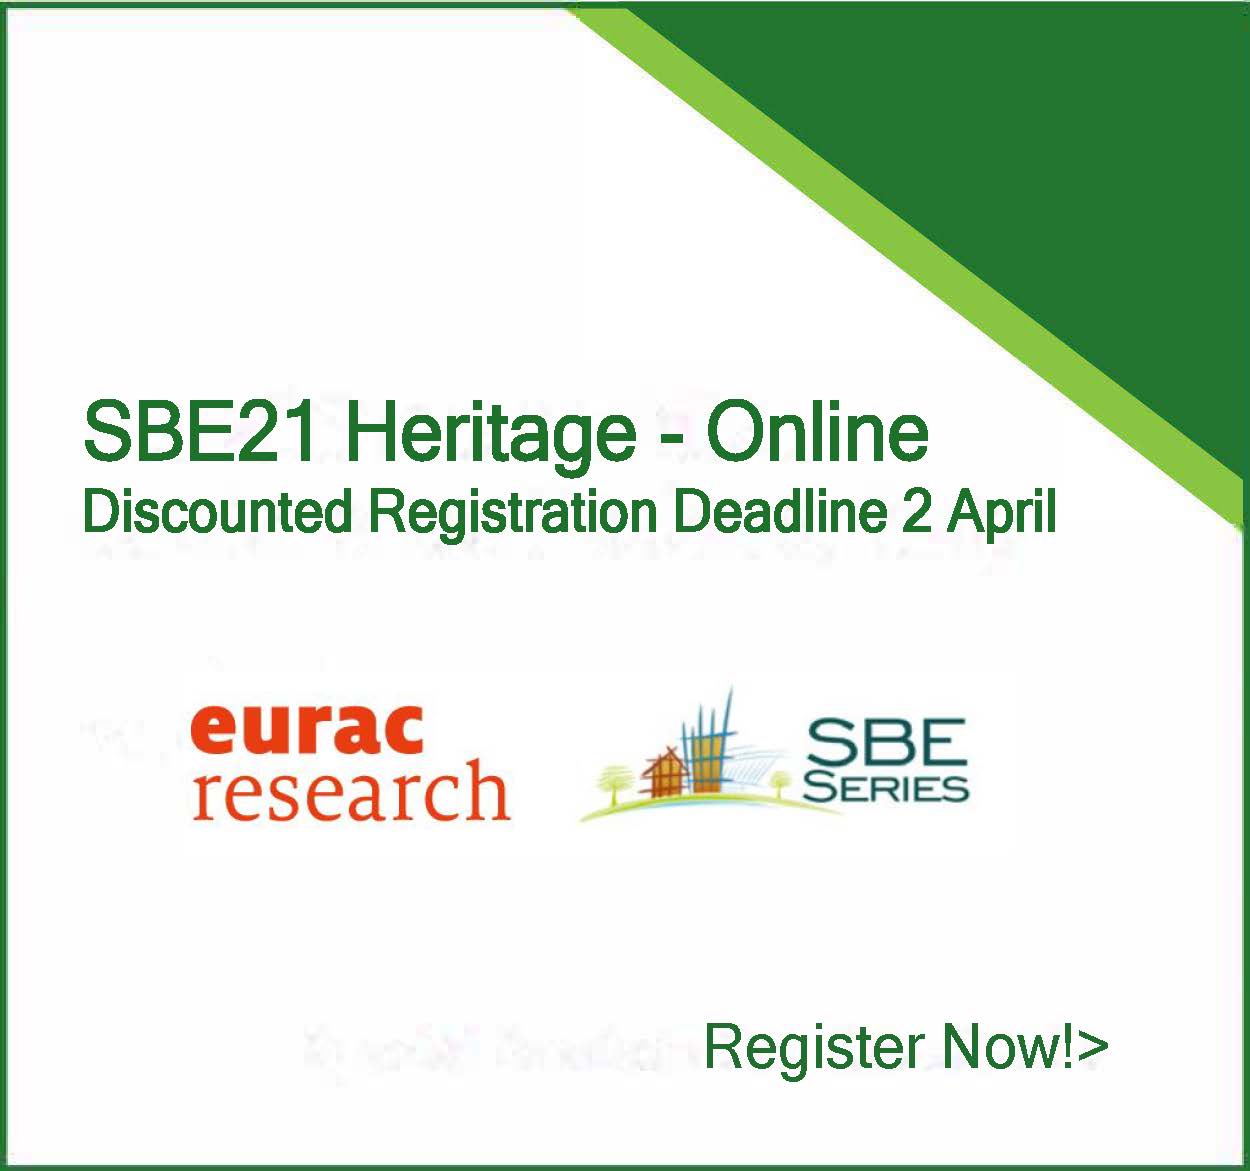 Online Conference SBE21 Heritage – Registration Deadline for discount 2 April 2021